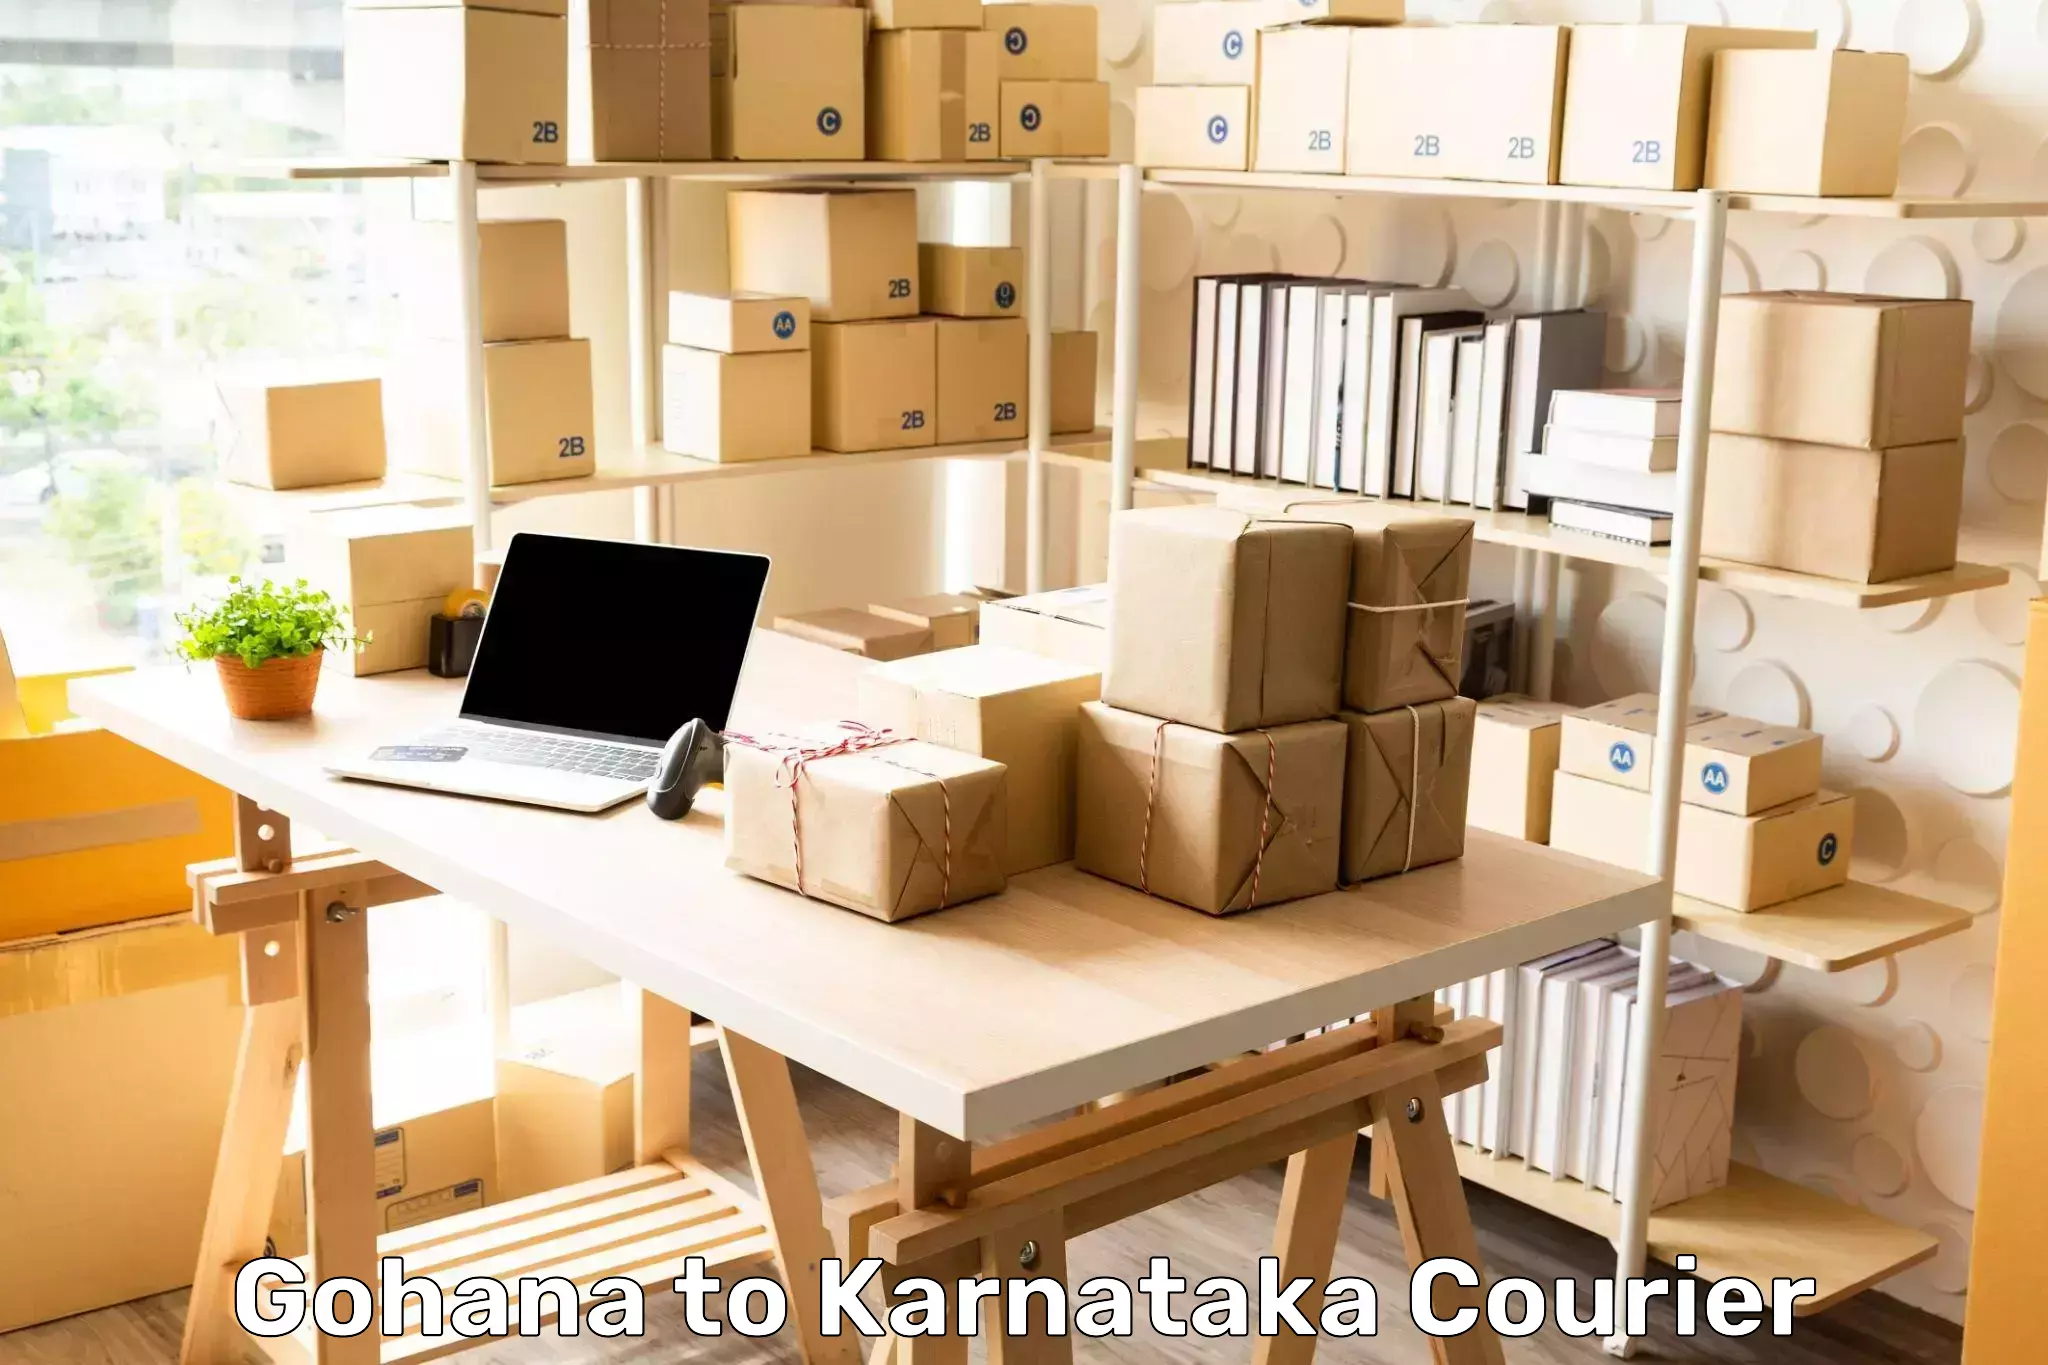 Pharmaceutical courier Gohana to Karnataka